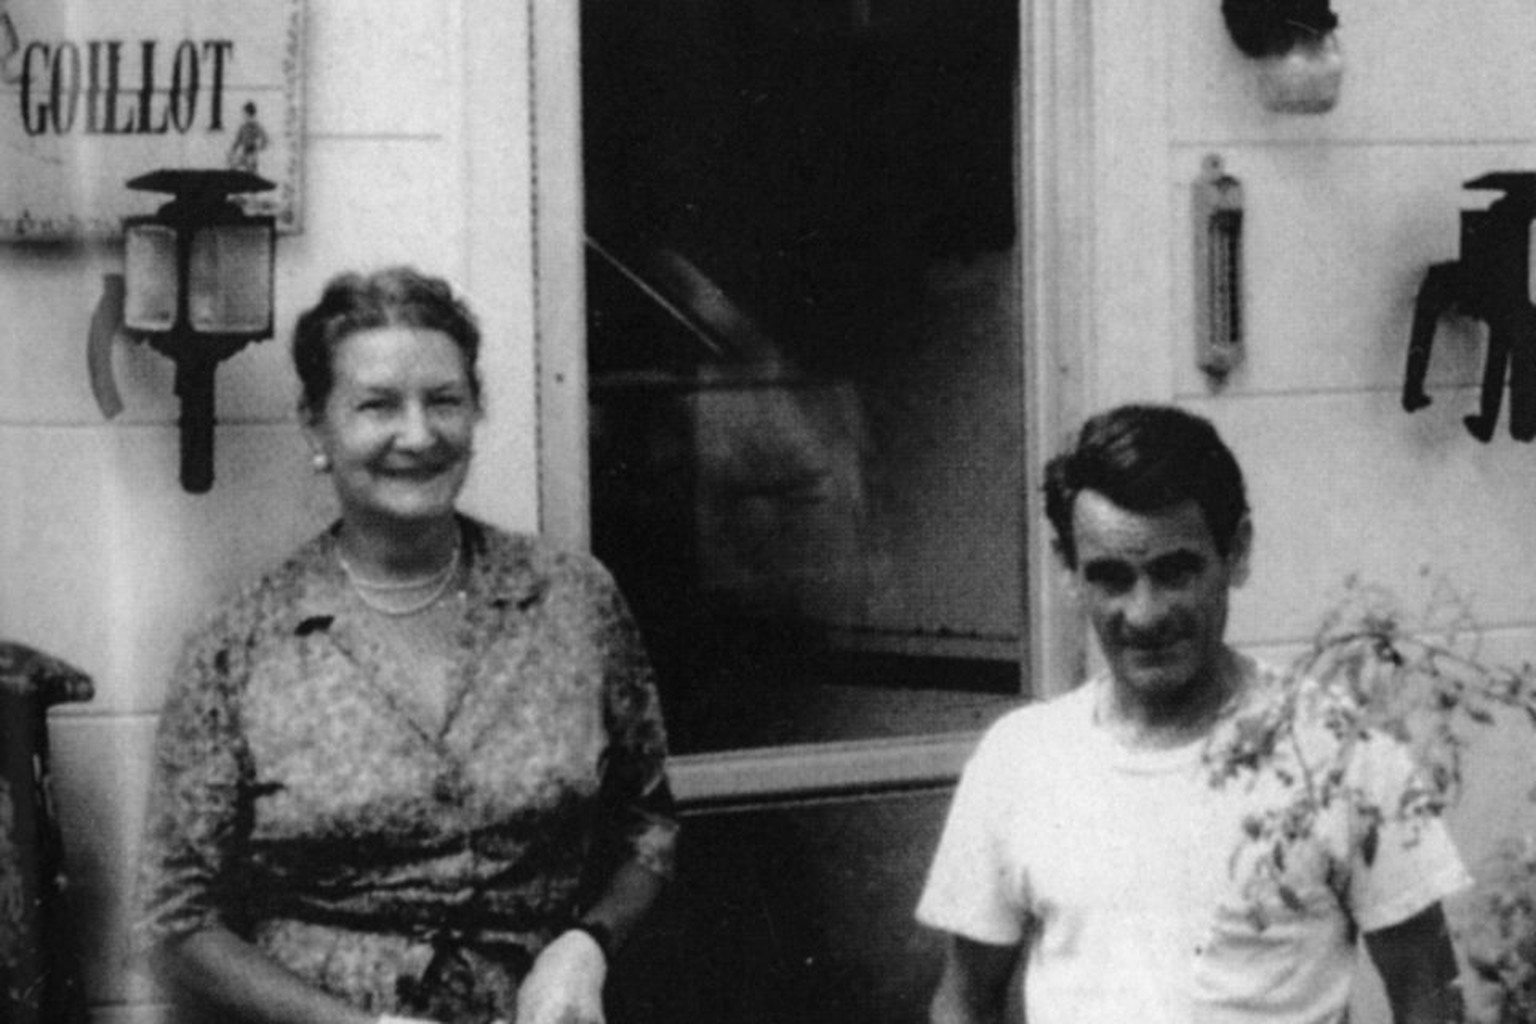 Virginia mit ihrem Gatten Paul Goillot vor ihrem Haus in Maryland. Sie betonte stets, wie sehr er ihr Leben mit Lachen erfüllte.